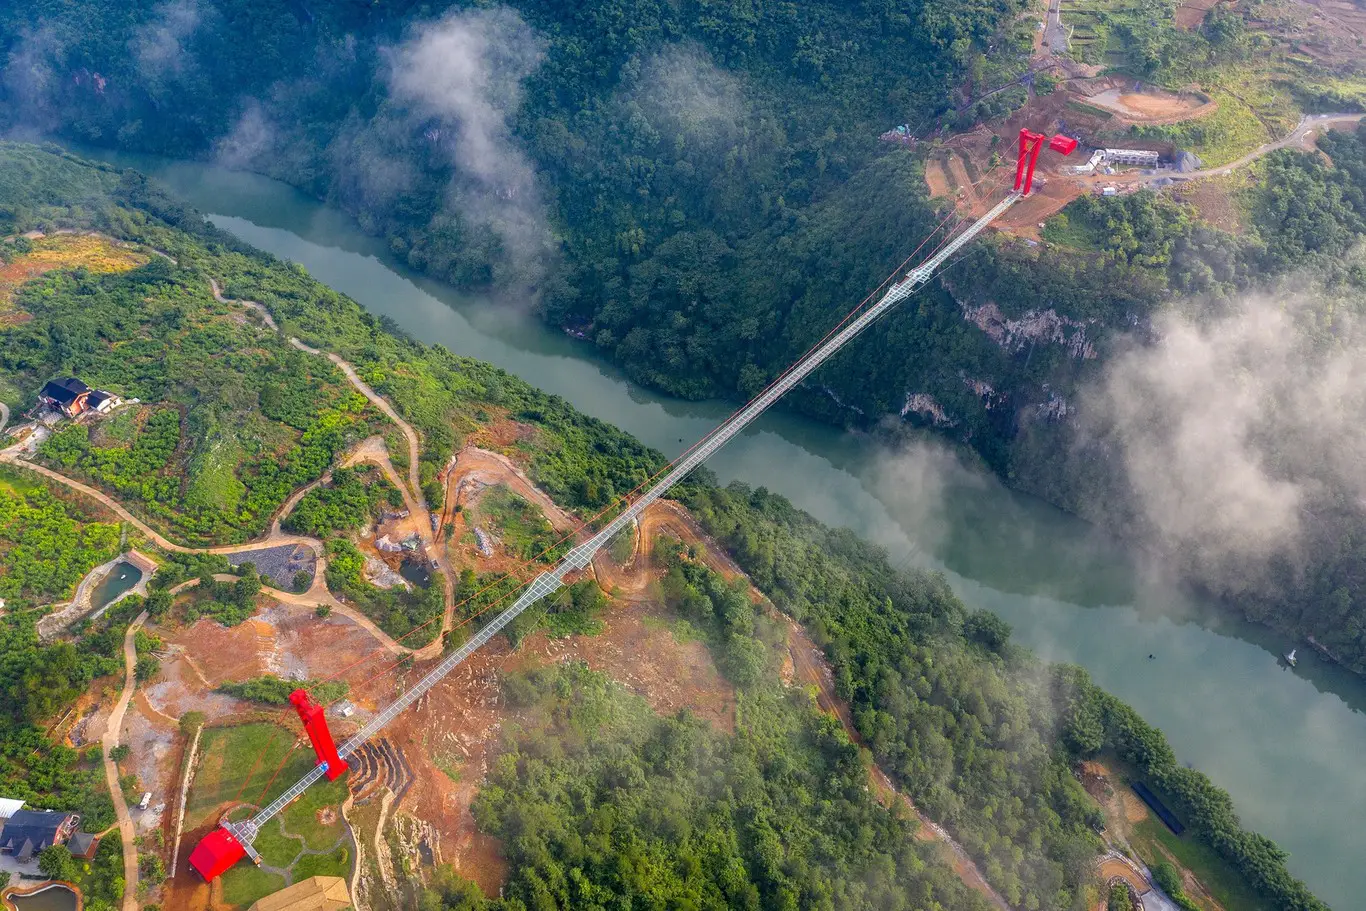 puente mas largo del mundo foto aerea